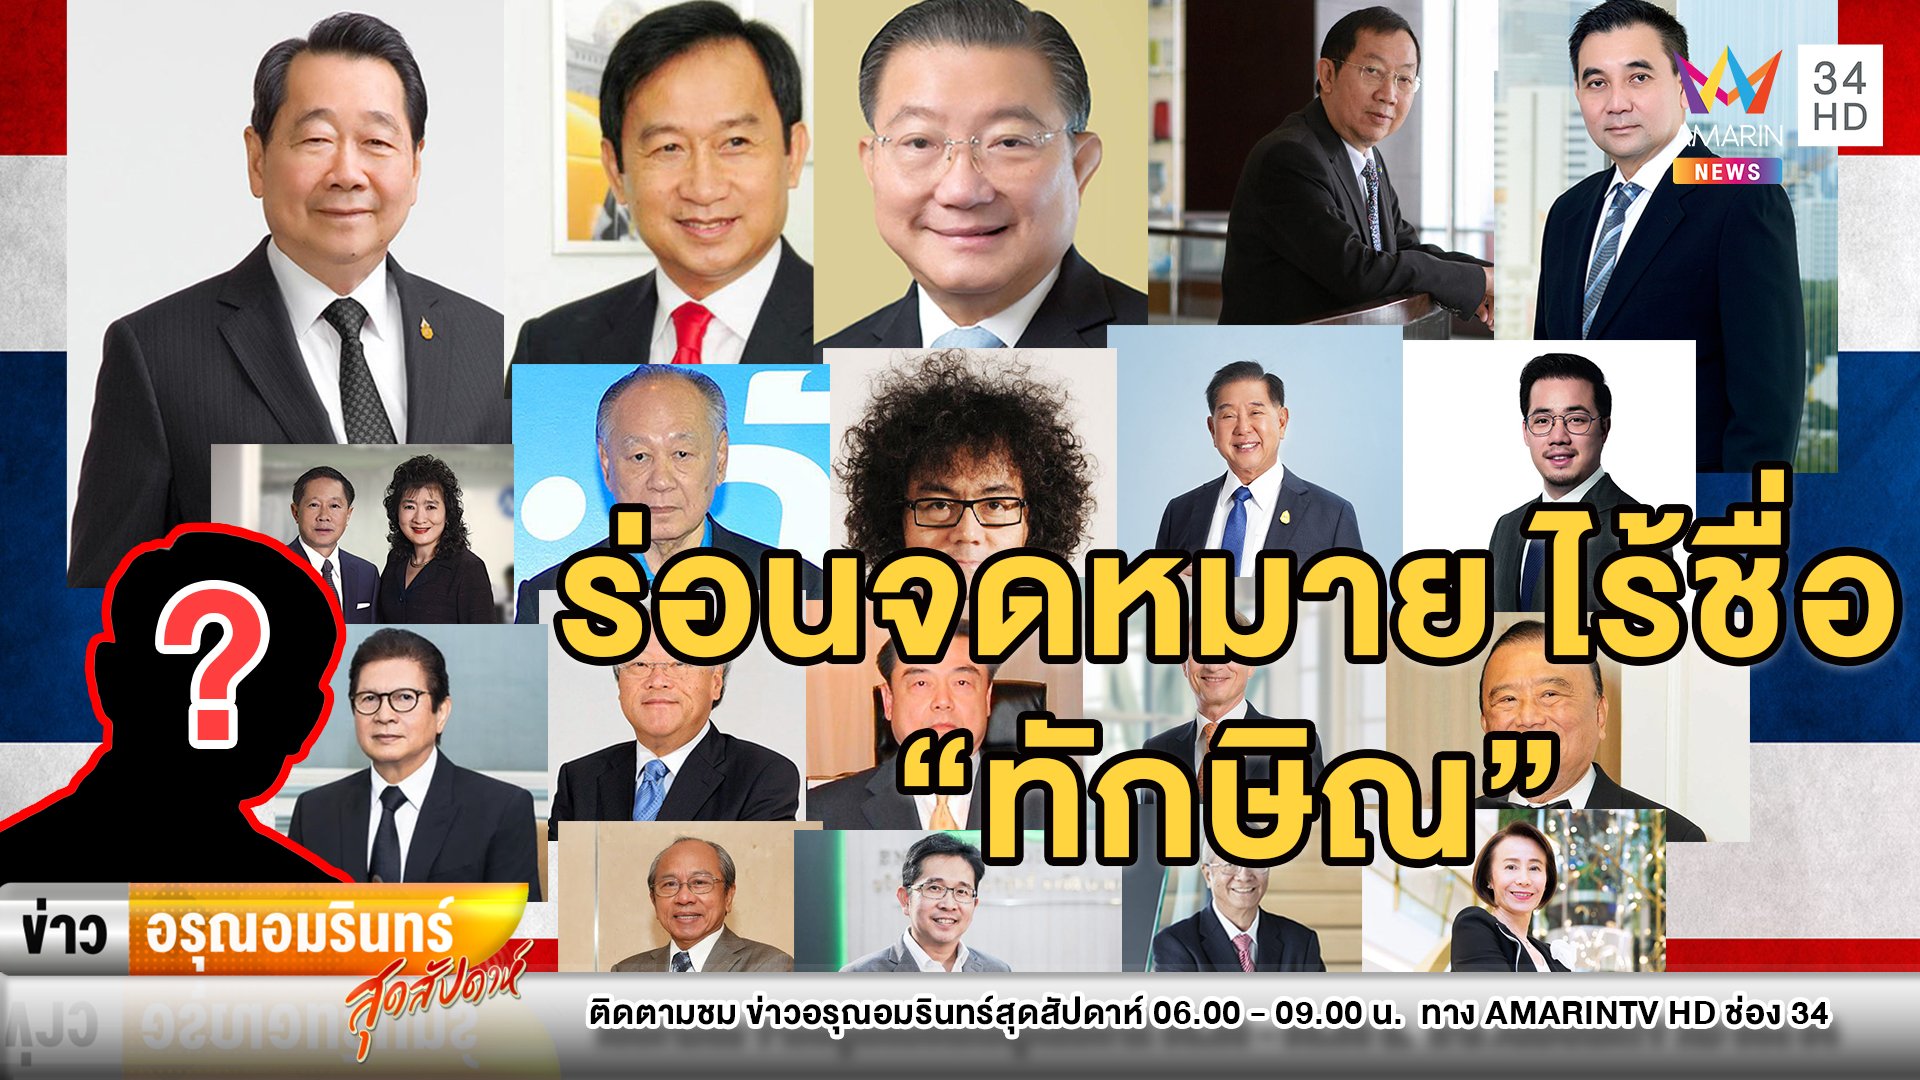 “บิ๊กตู่” ส่ง จม. ถึง 20 มหาเศรษฐีไทยสู้โควิด-19 ไร้ชื่อ “ทักษิณ” | ข่าวอรุณอมรินทร์ สุดสัปดาห์ | 18 เม.ย. 63 | AMARIN TVHD34